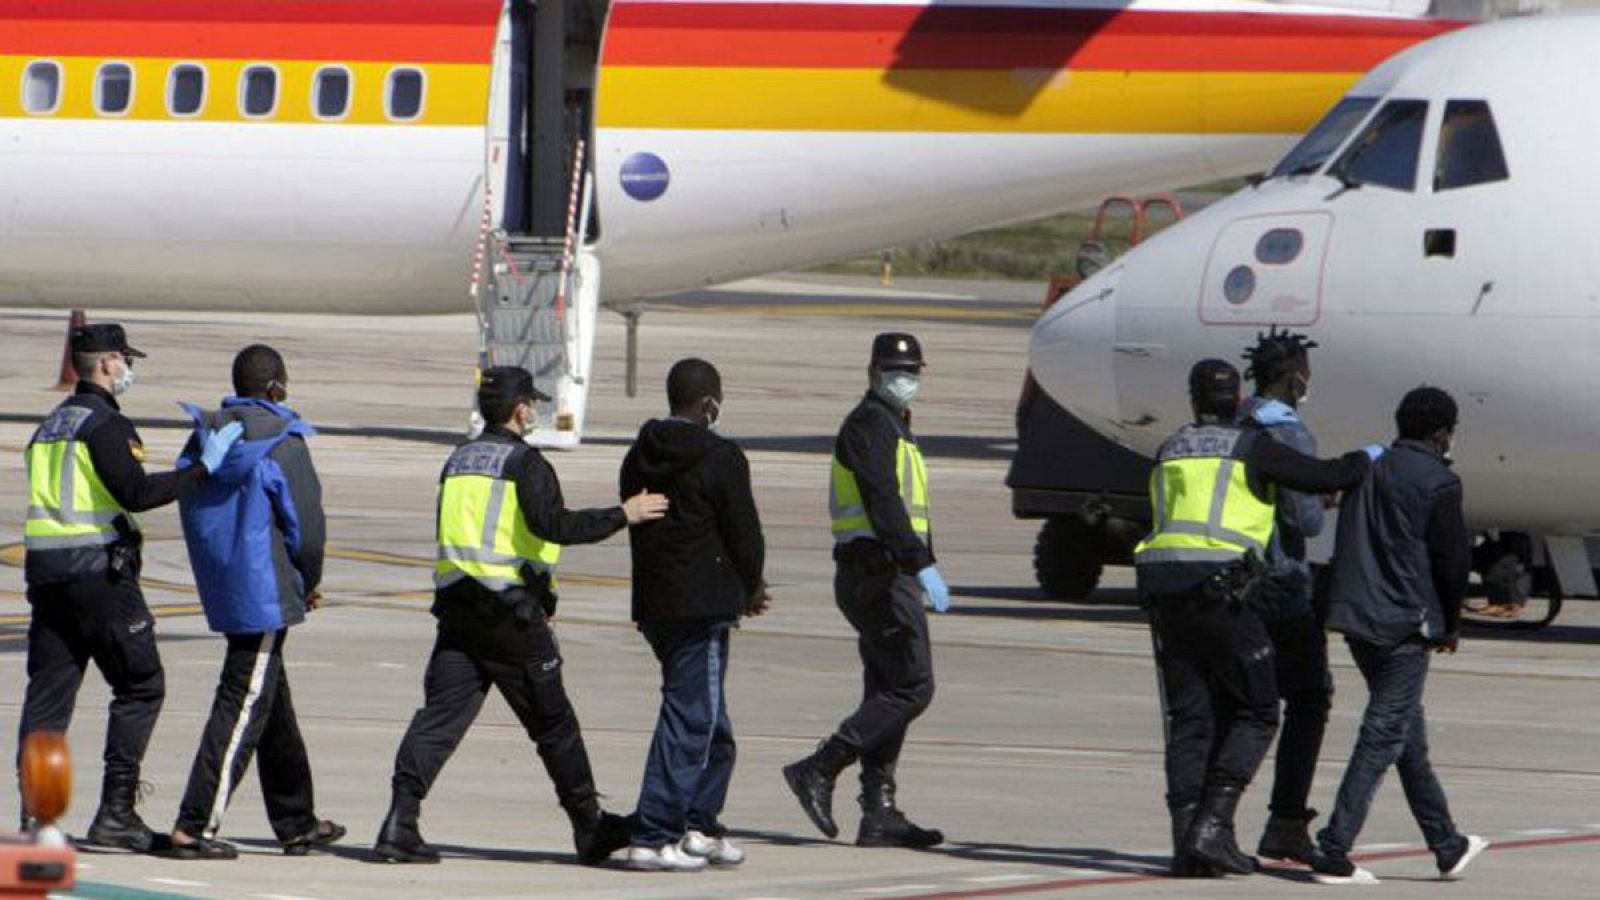 La Policía traslada hasta el avión a un grupo de inmigrantes que van a ser expulsados